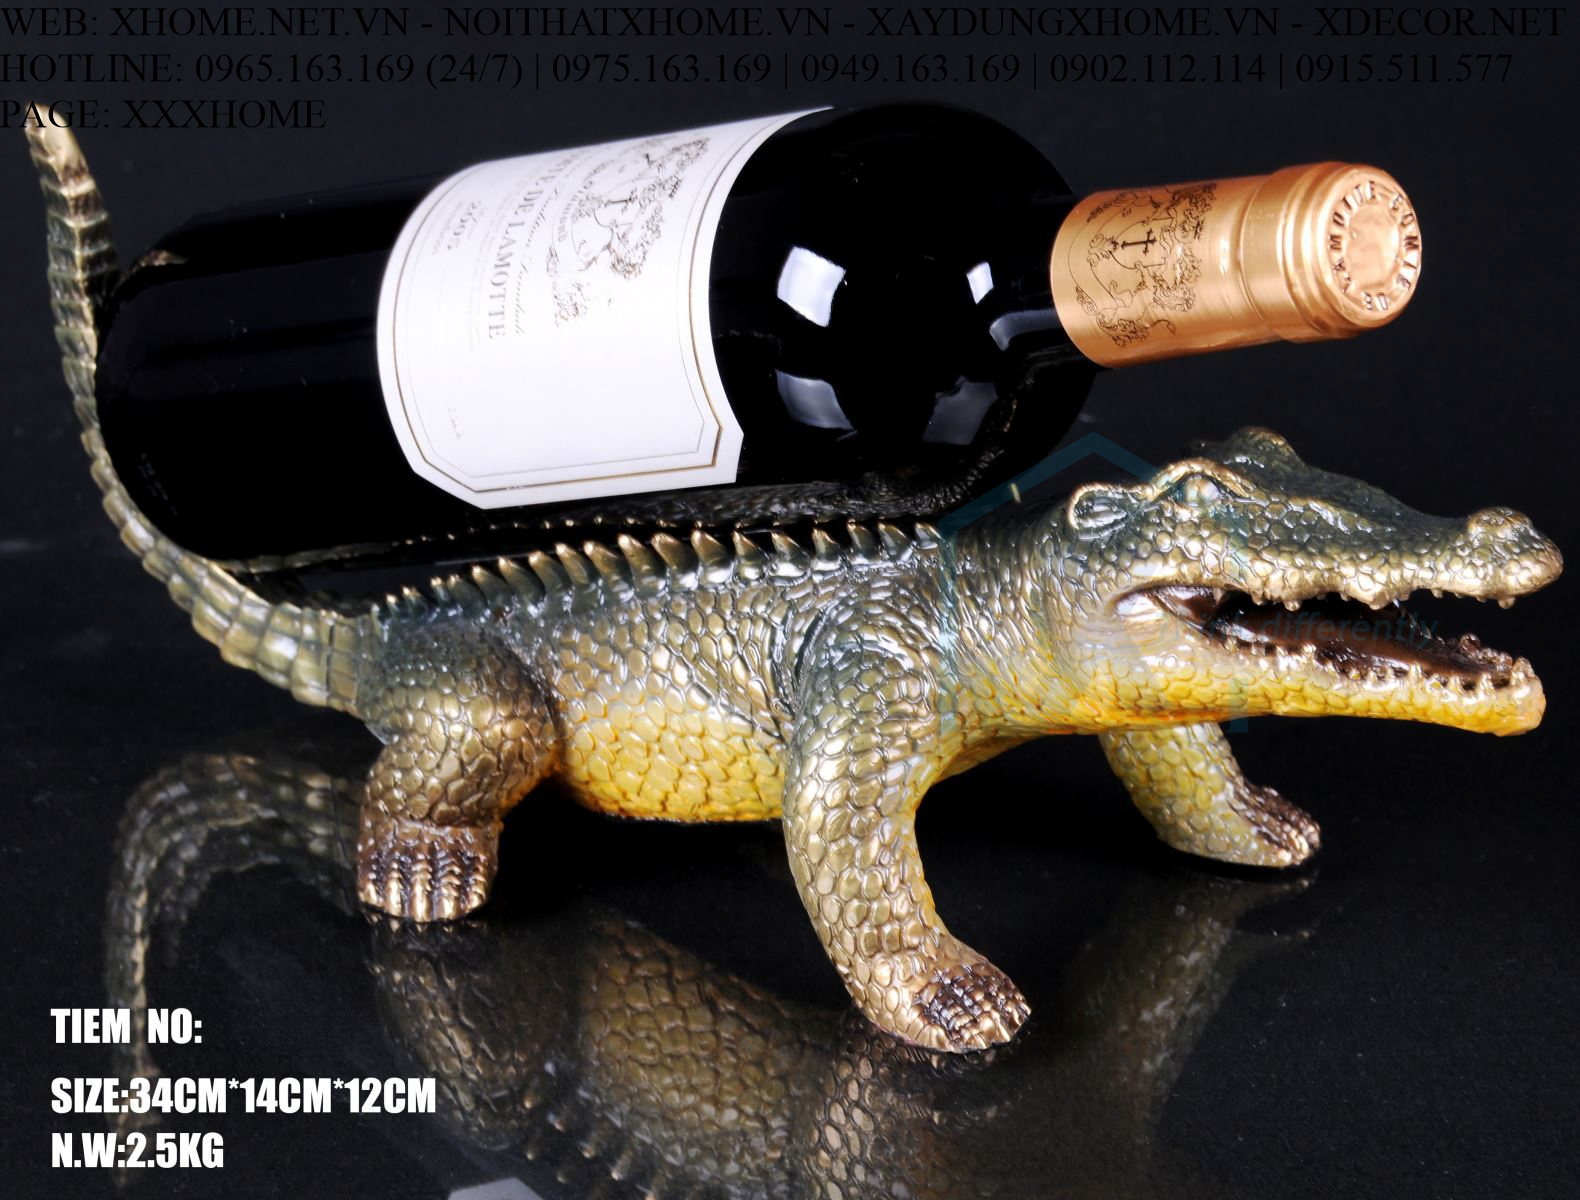 Decor bằng đồng X HOME Hà Nội Hồ Chí Minh Kệ rượu cá sấu